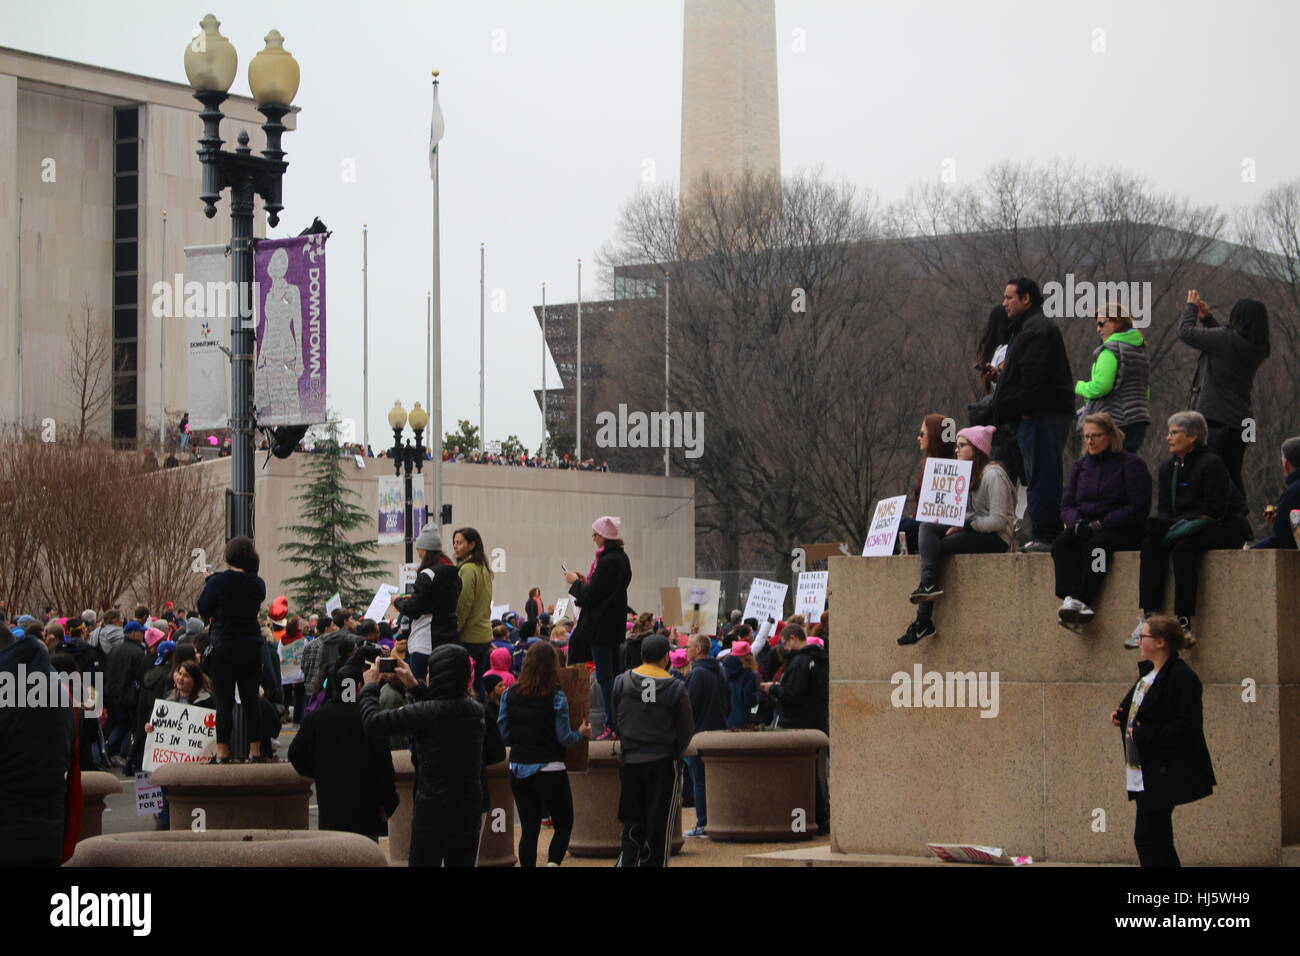 Distrikt von Columbia, USA. 21 Jan, 2017. Demonstranten vor der nationalen Museum der amerikanischen Geschichte auf einer Mauer sitzen. Stockfoto